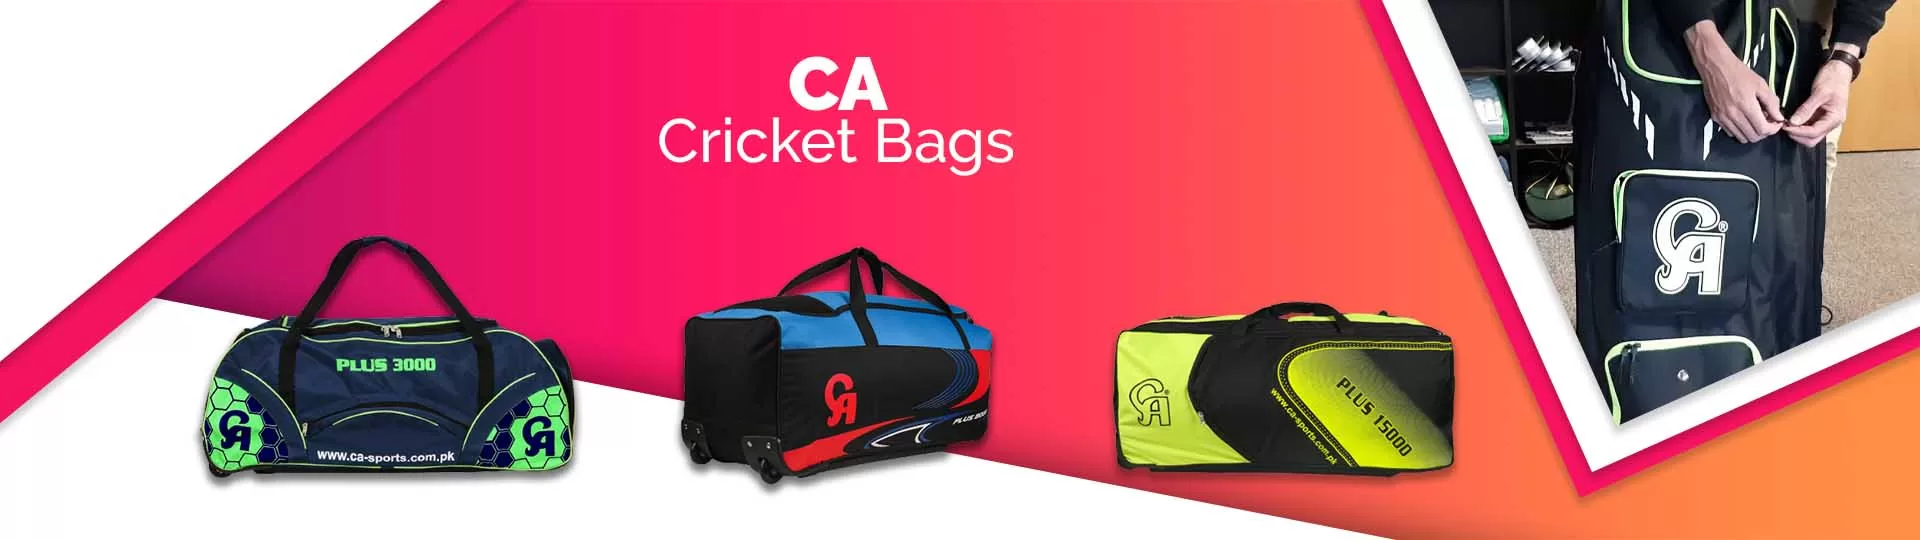 CA Cricket Bags